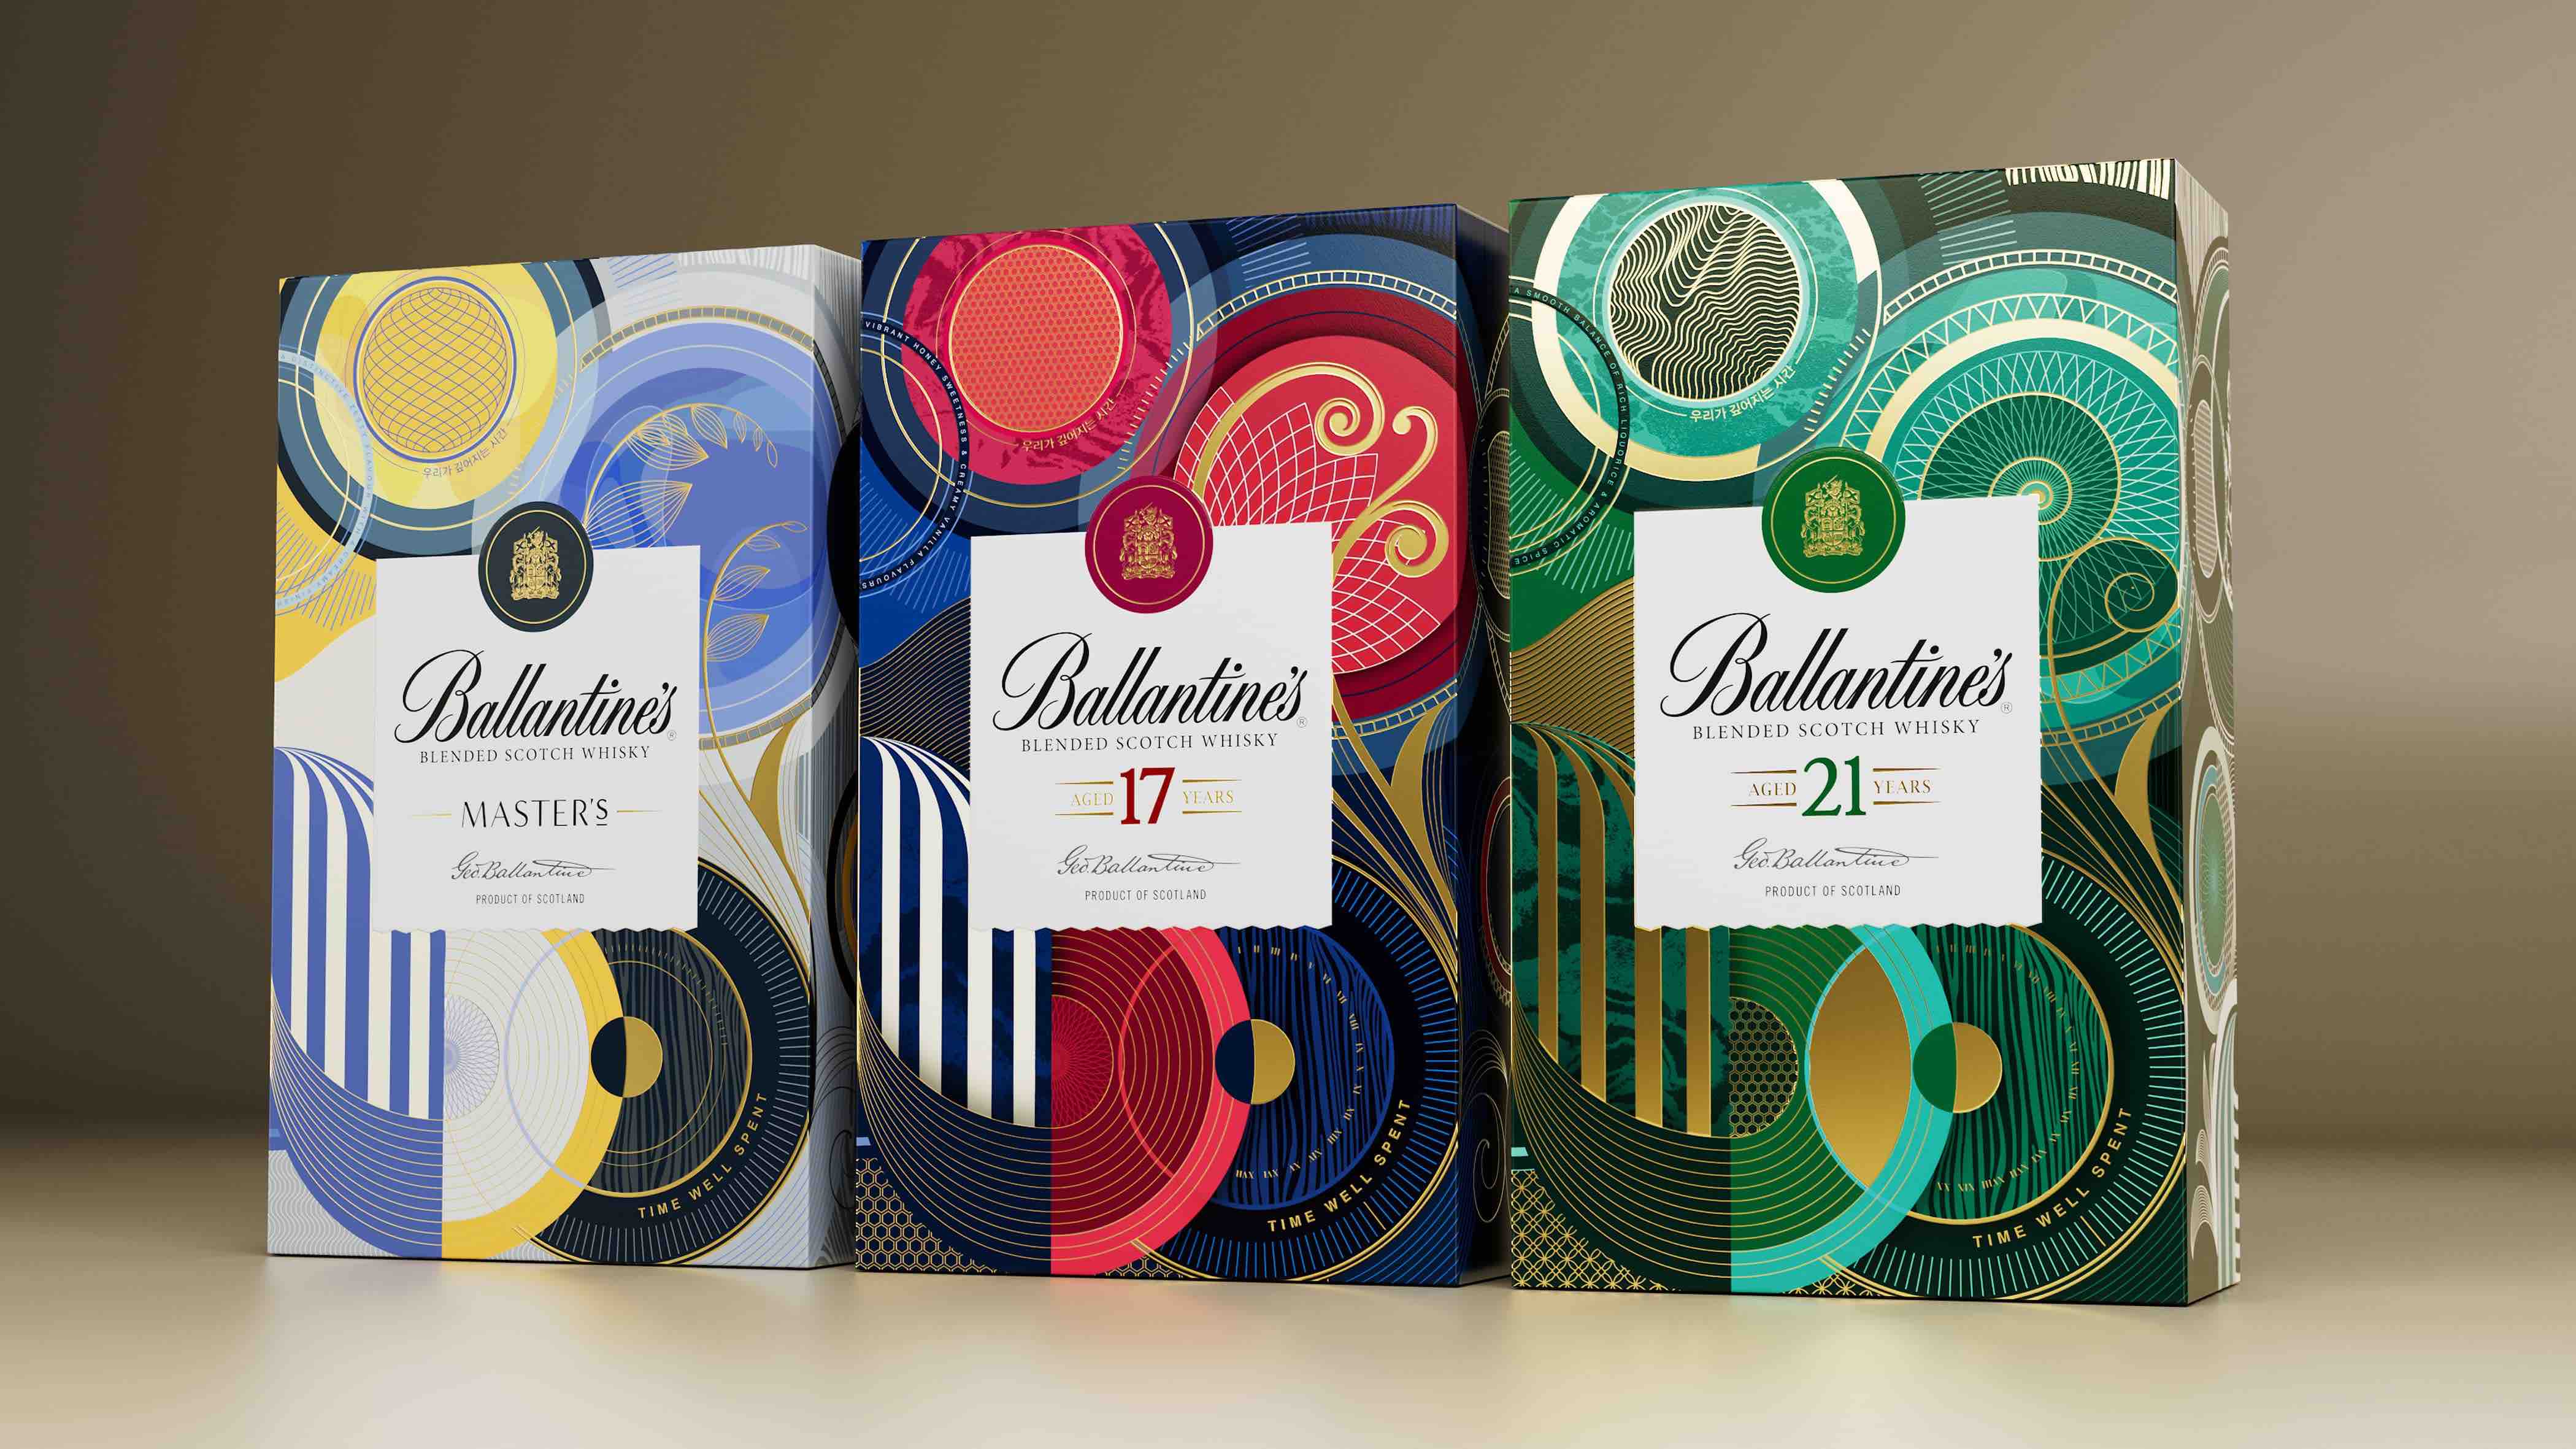 Ballantine’s Blended Scott Whisky Prestige Gifting Packs